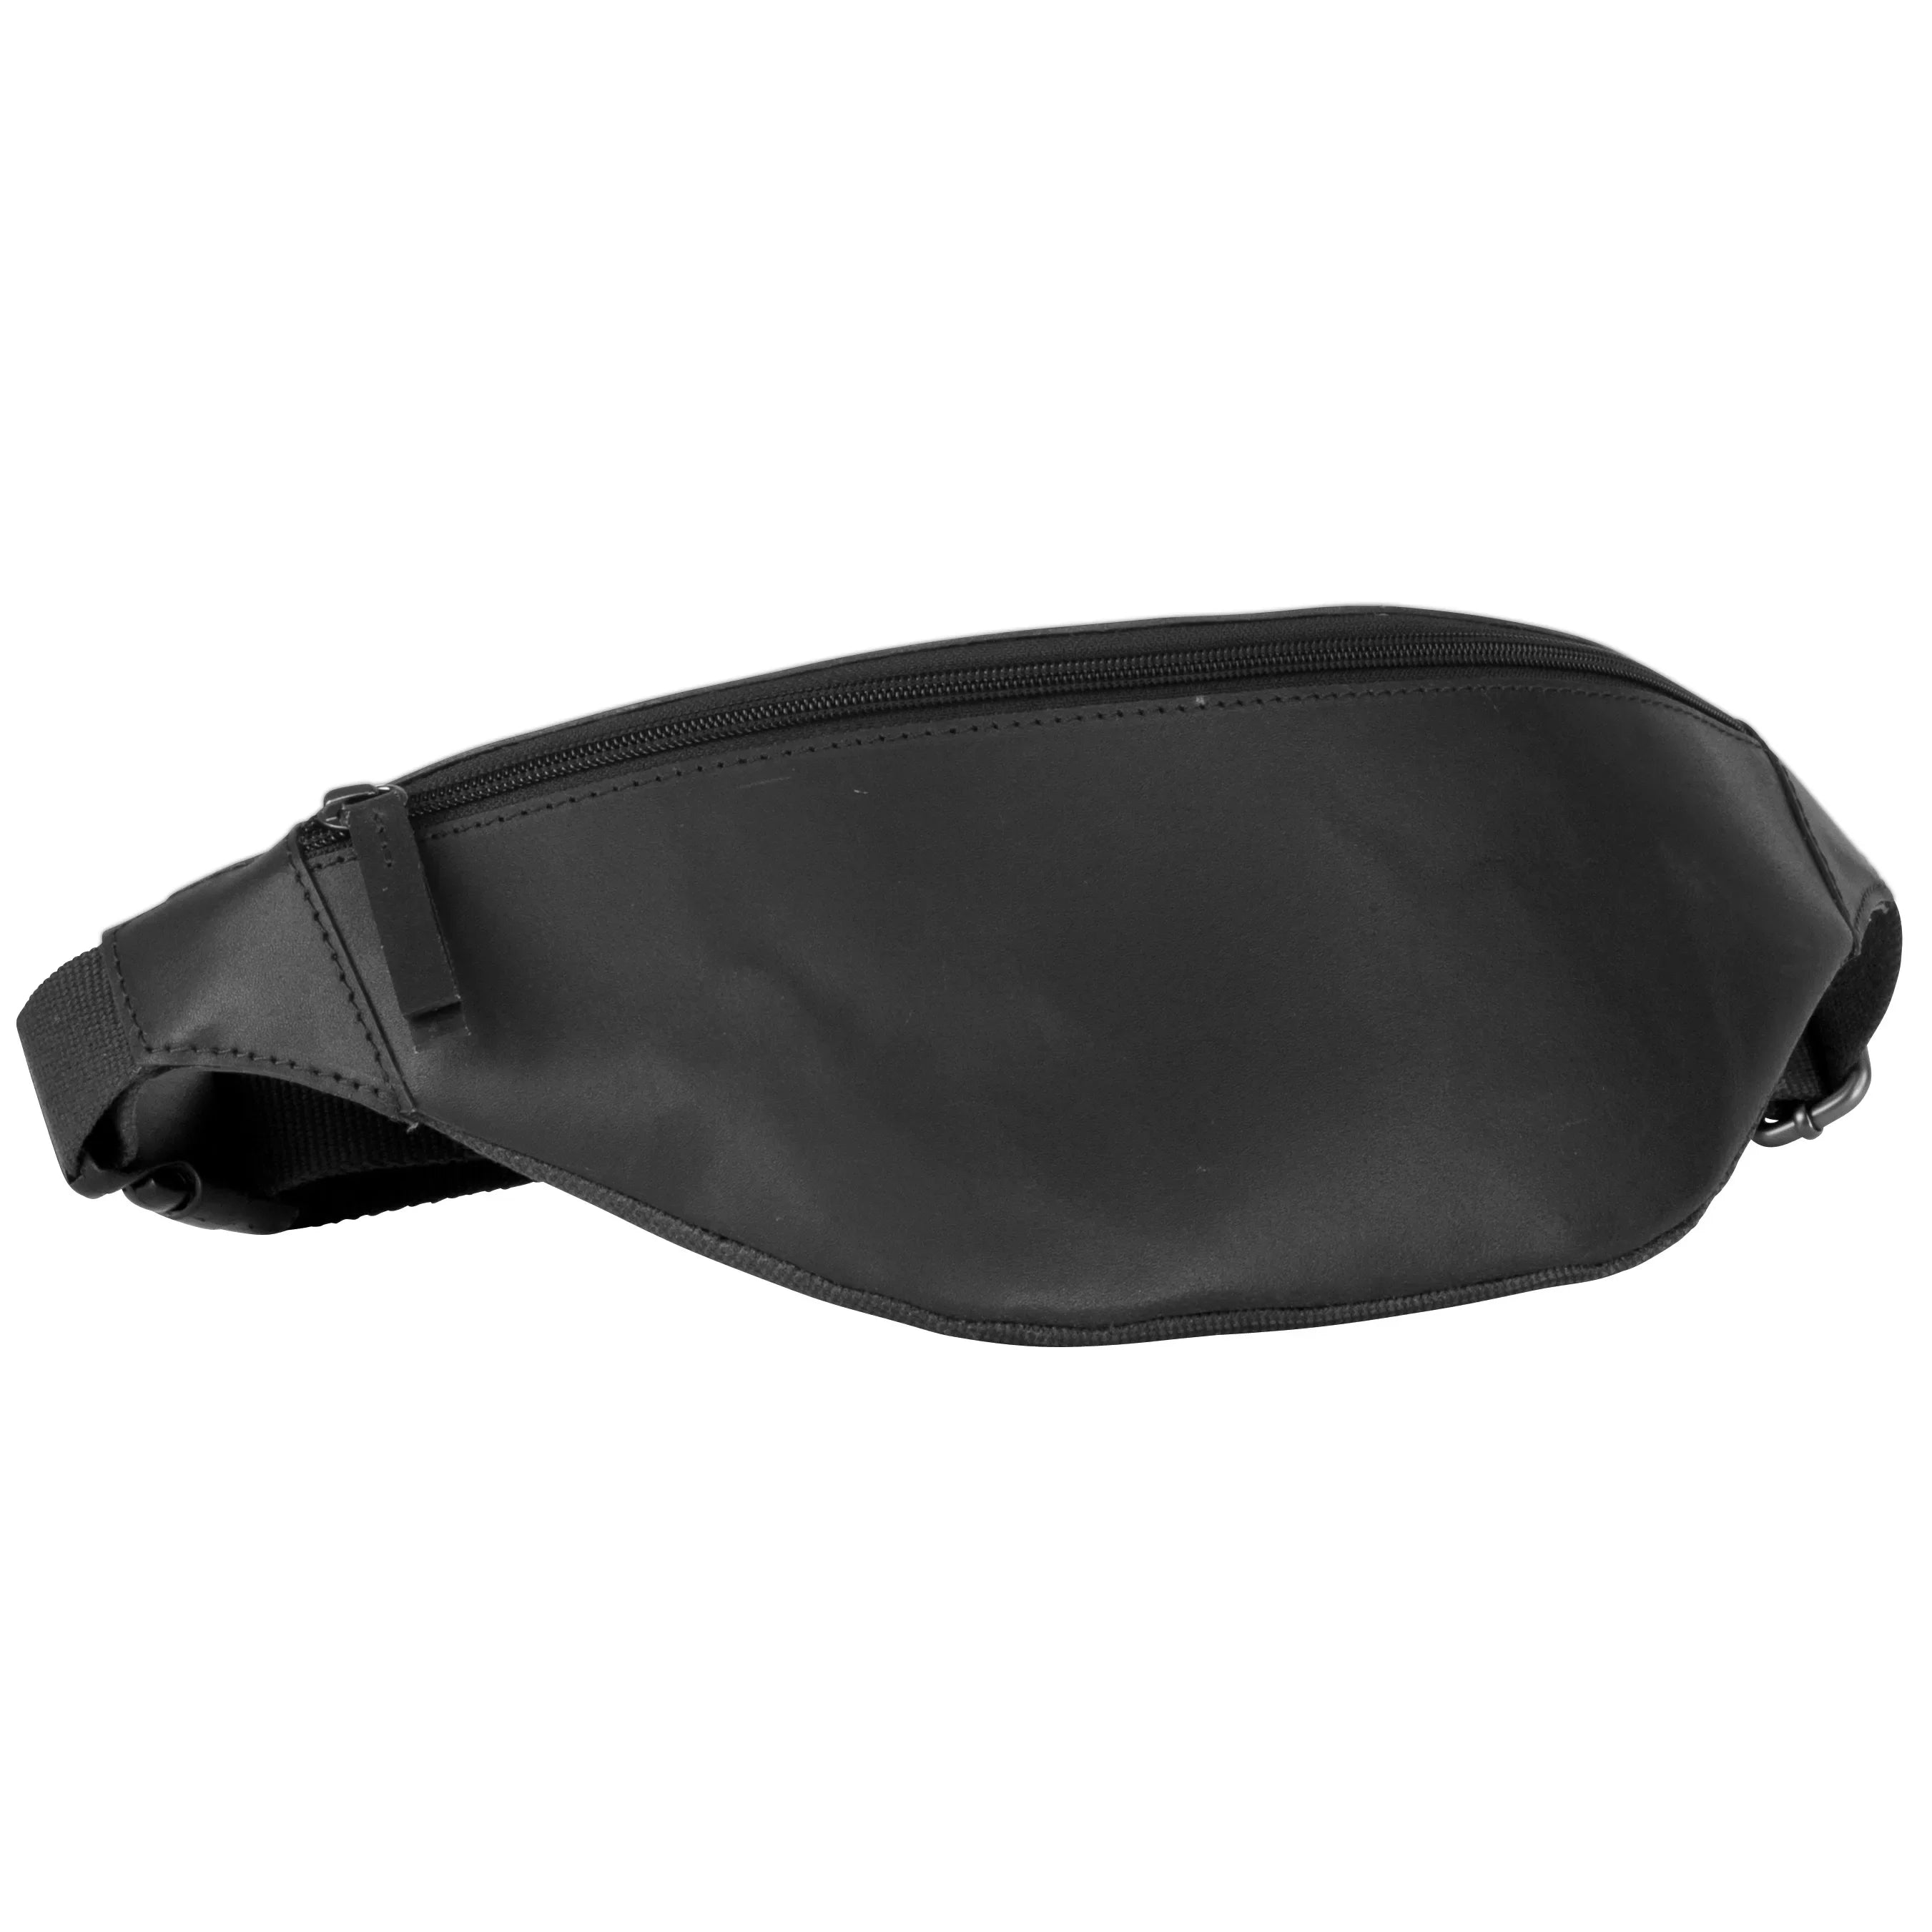 Leonhard Heyden Dakota hip bag 32 cm - black